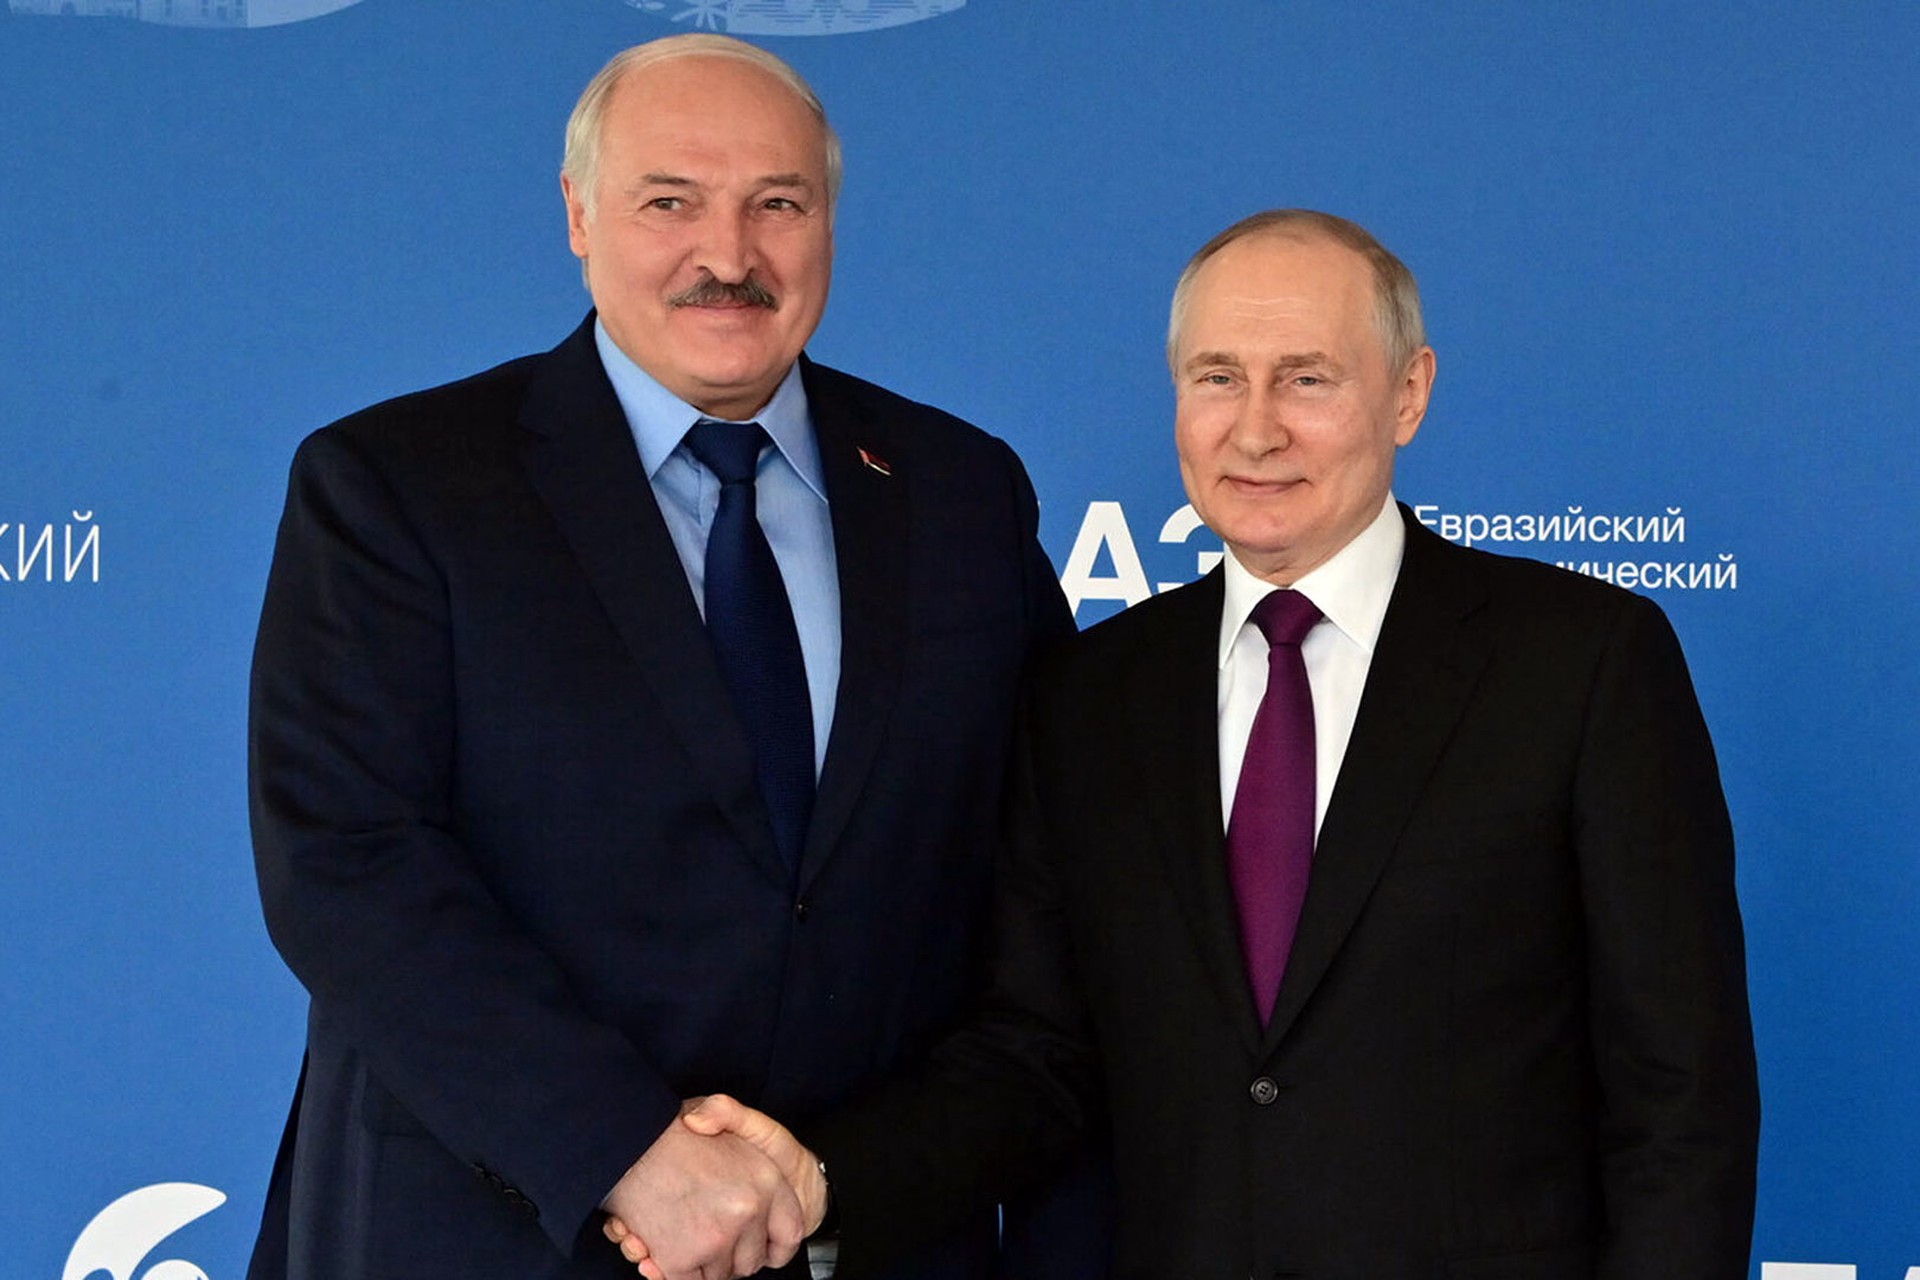 Лукашенко сообщил, что договорился с Путиным ввести единую валюту с Россией позже